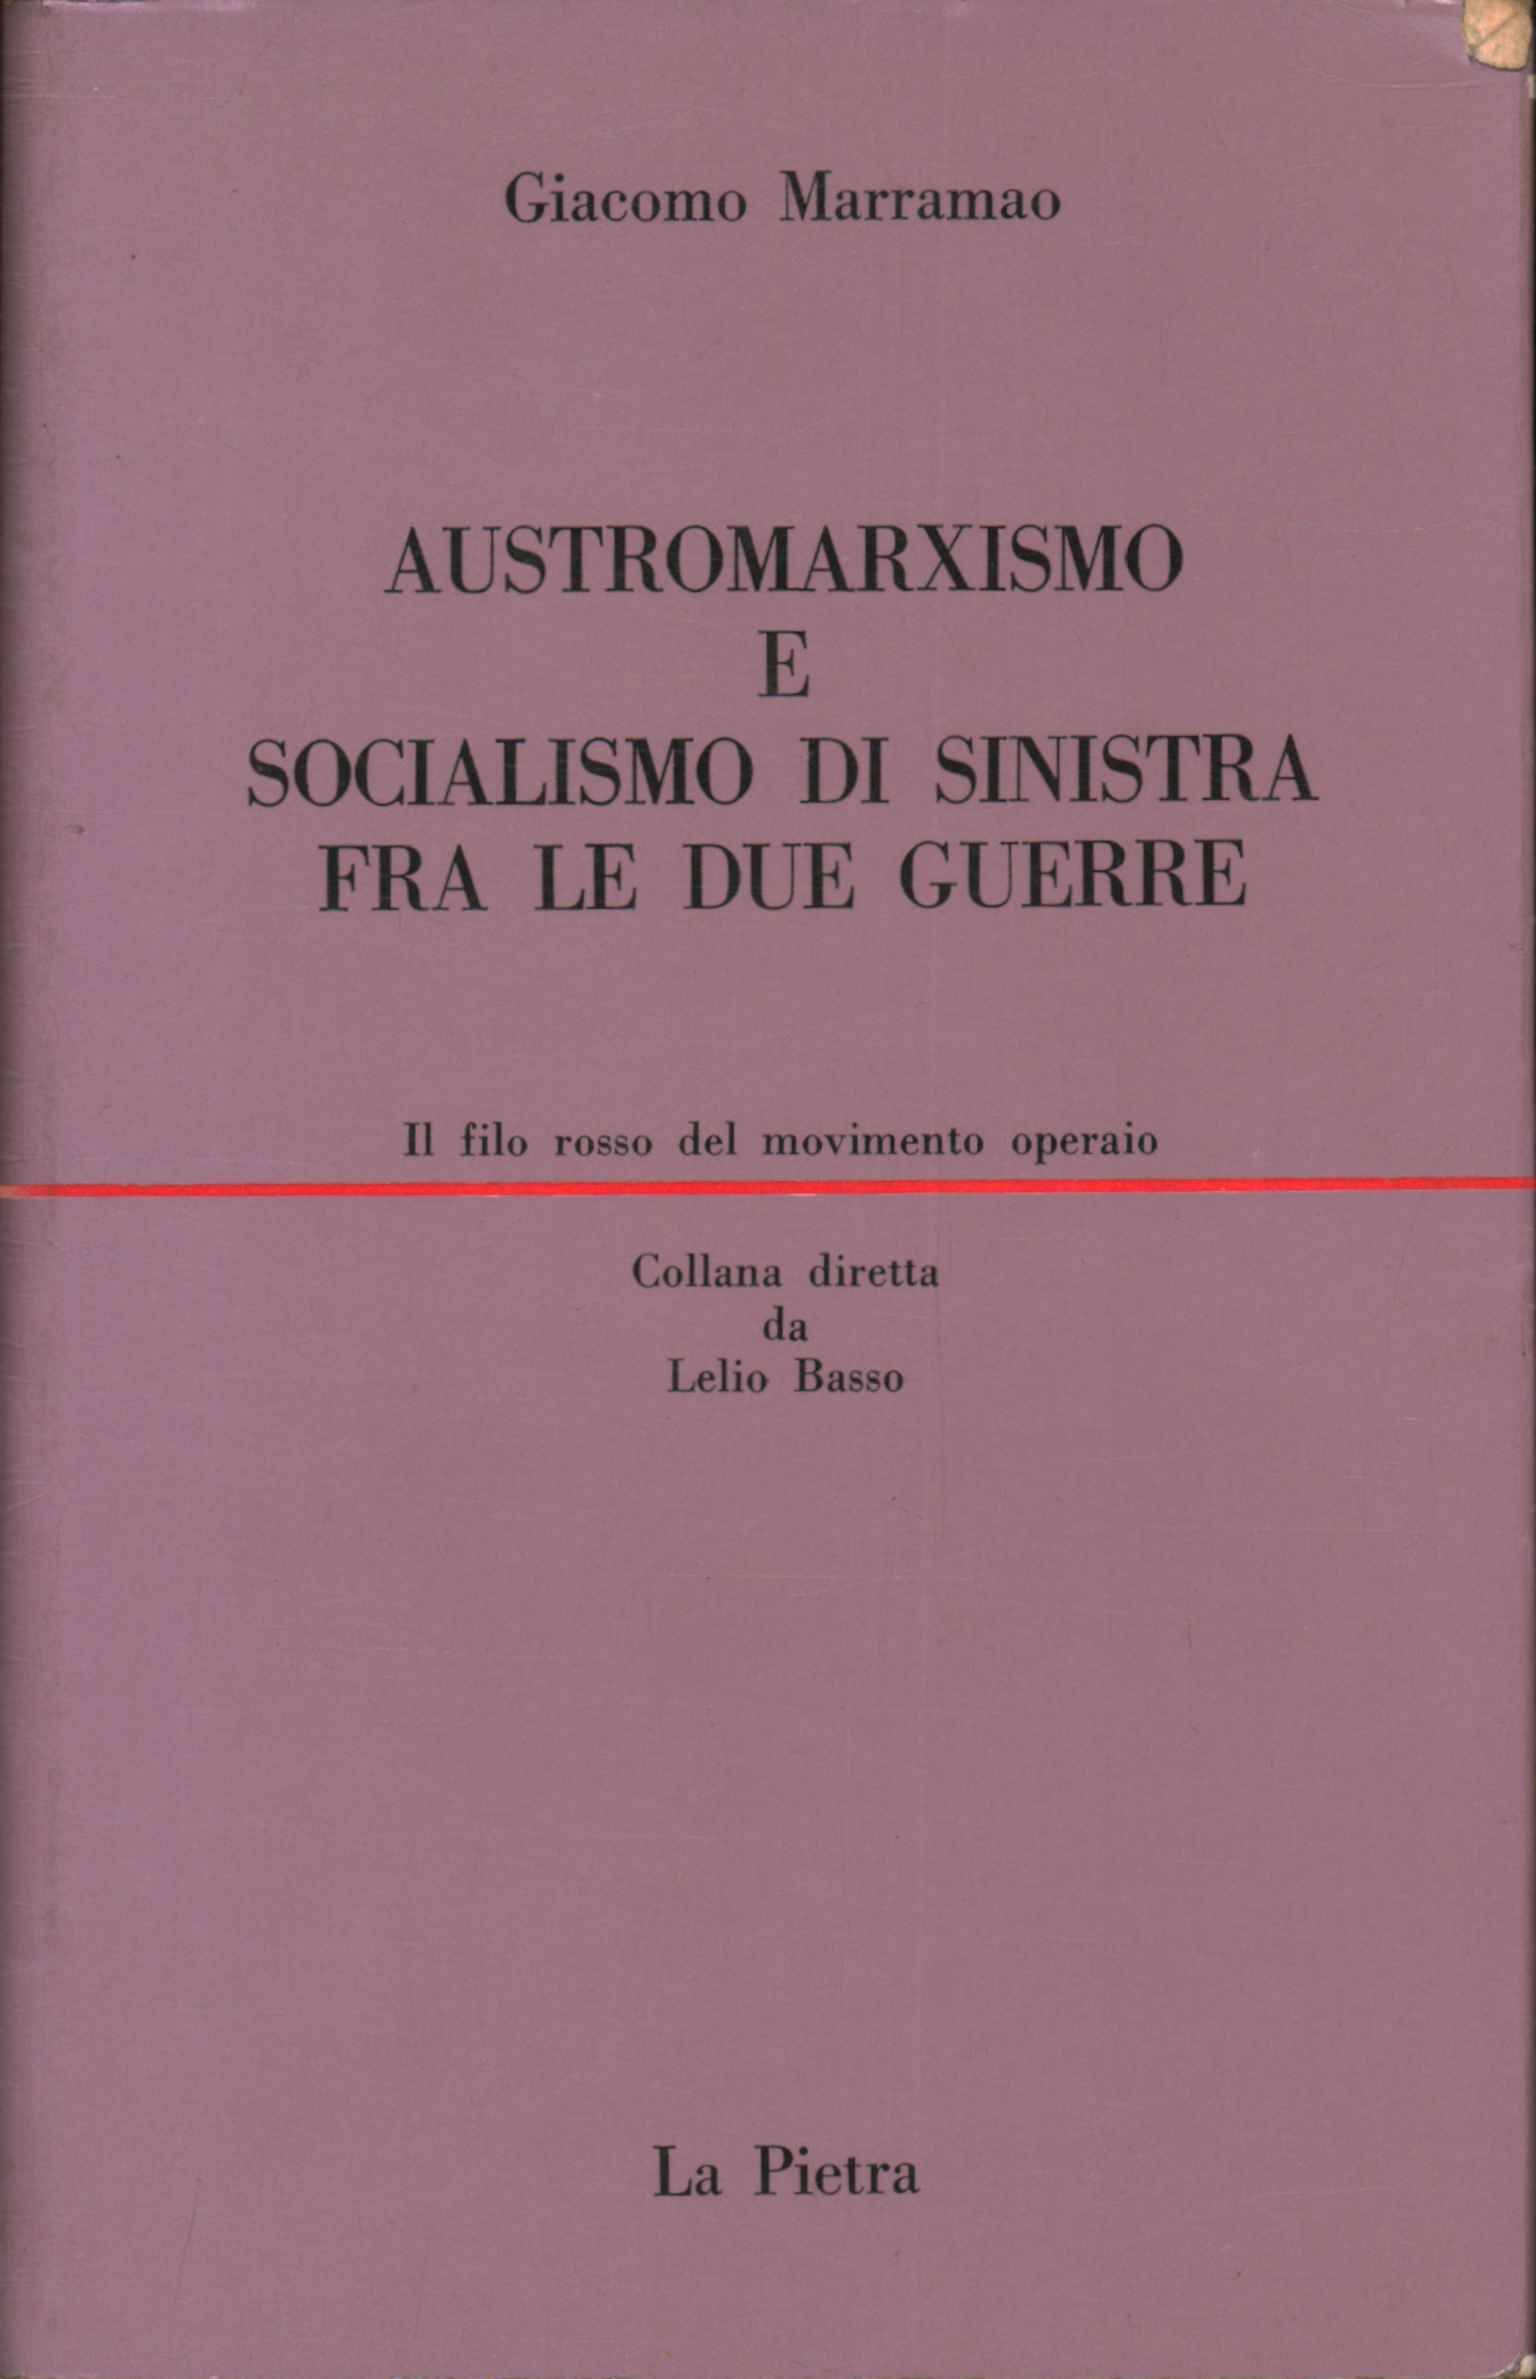 Austromarxismo e socialismo di sinistra